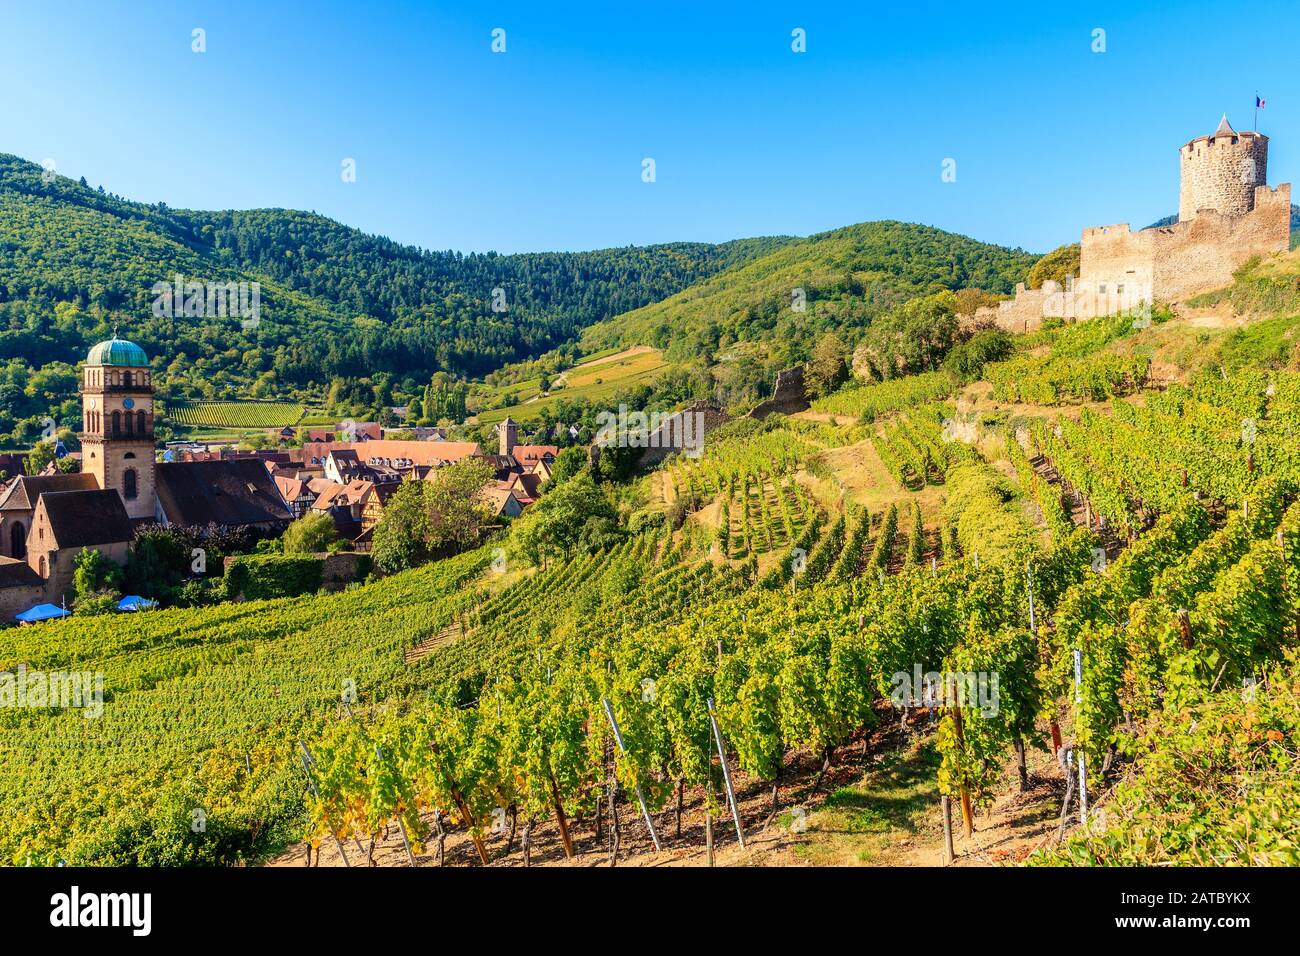 Mittelalterliche Burg auf dem Hügel zwischen Weinbergen in Kaysersberg Dorf auf der elsässischen Weinstraße, Frankreich Stockfoto